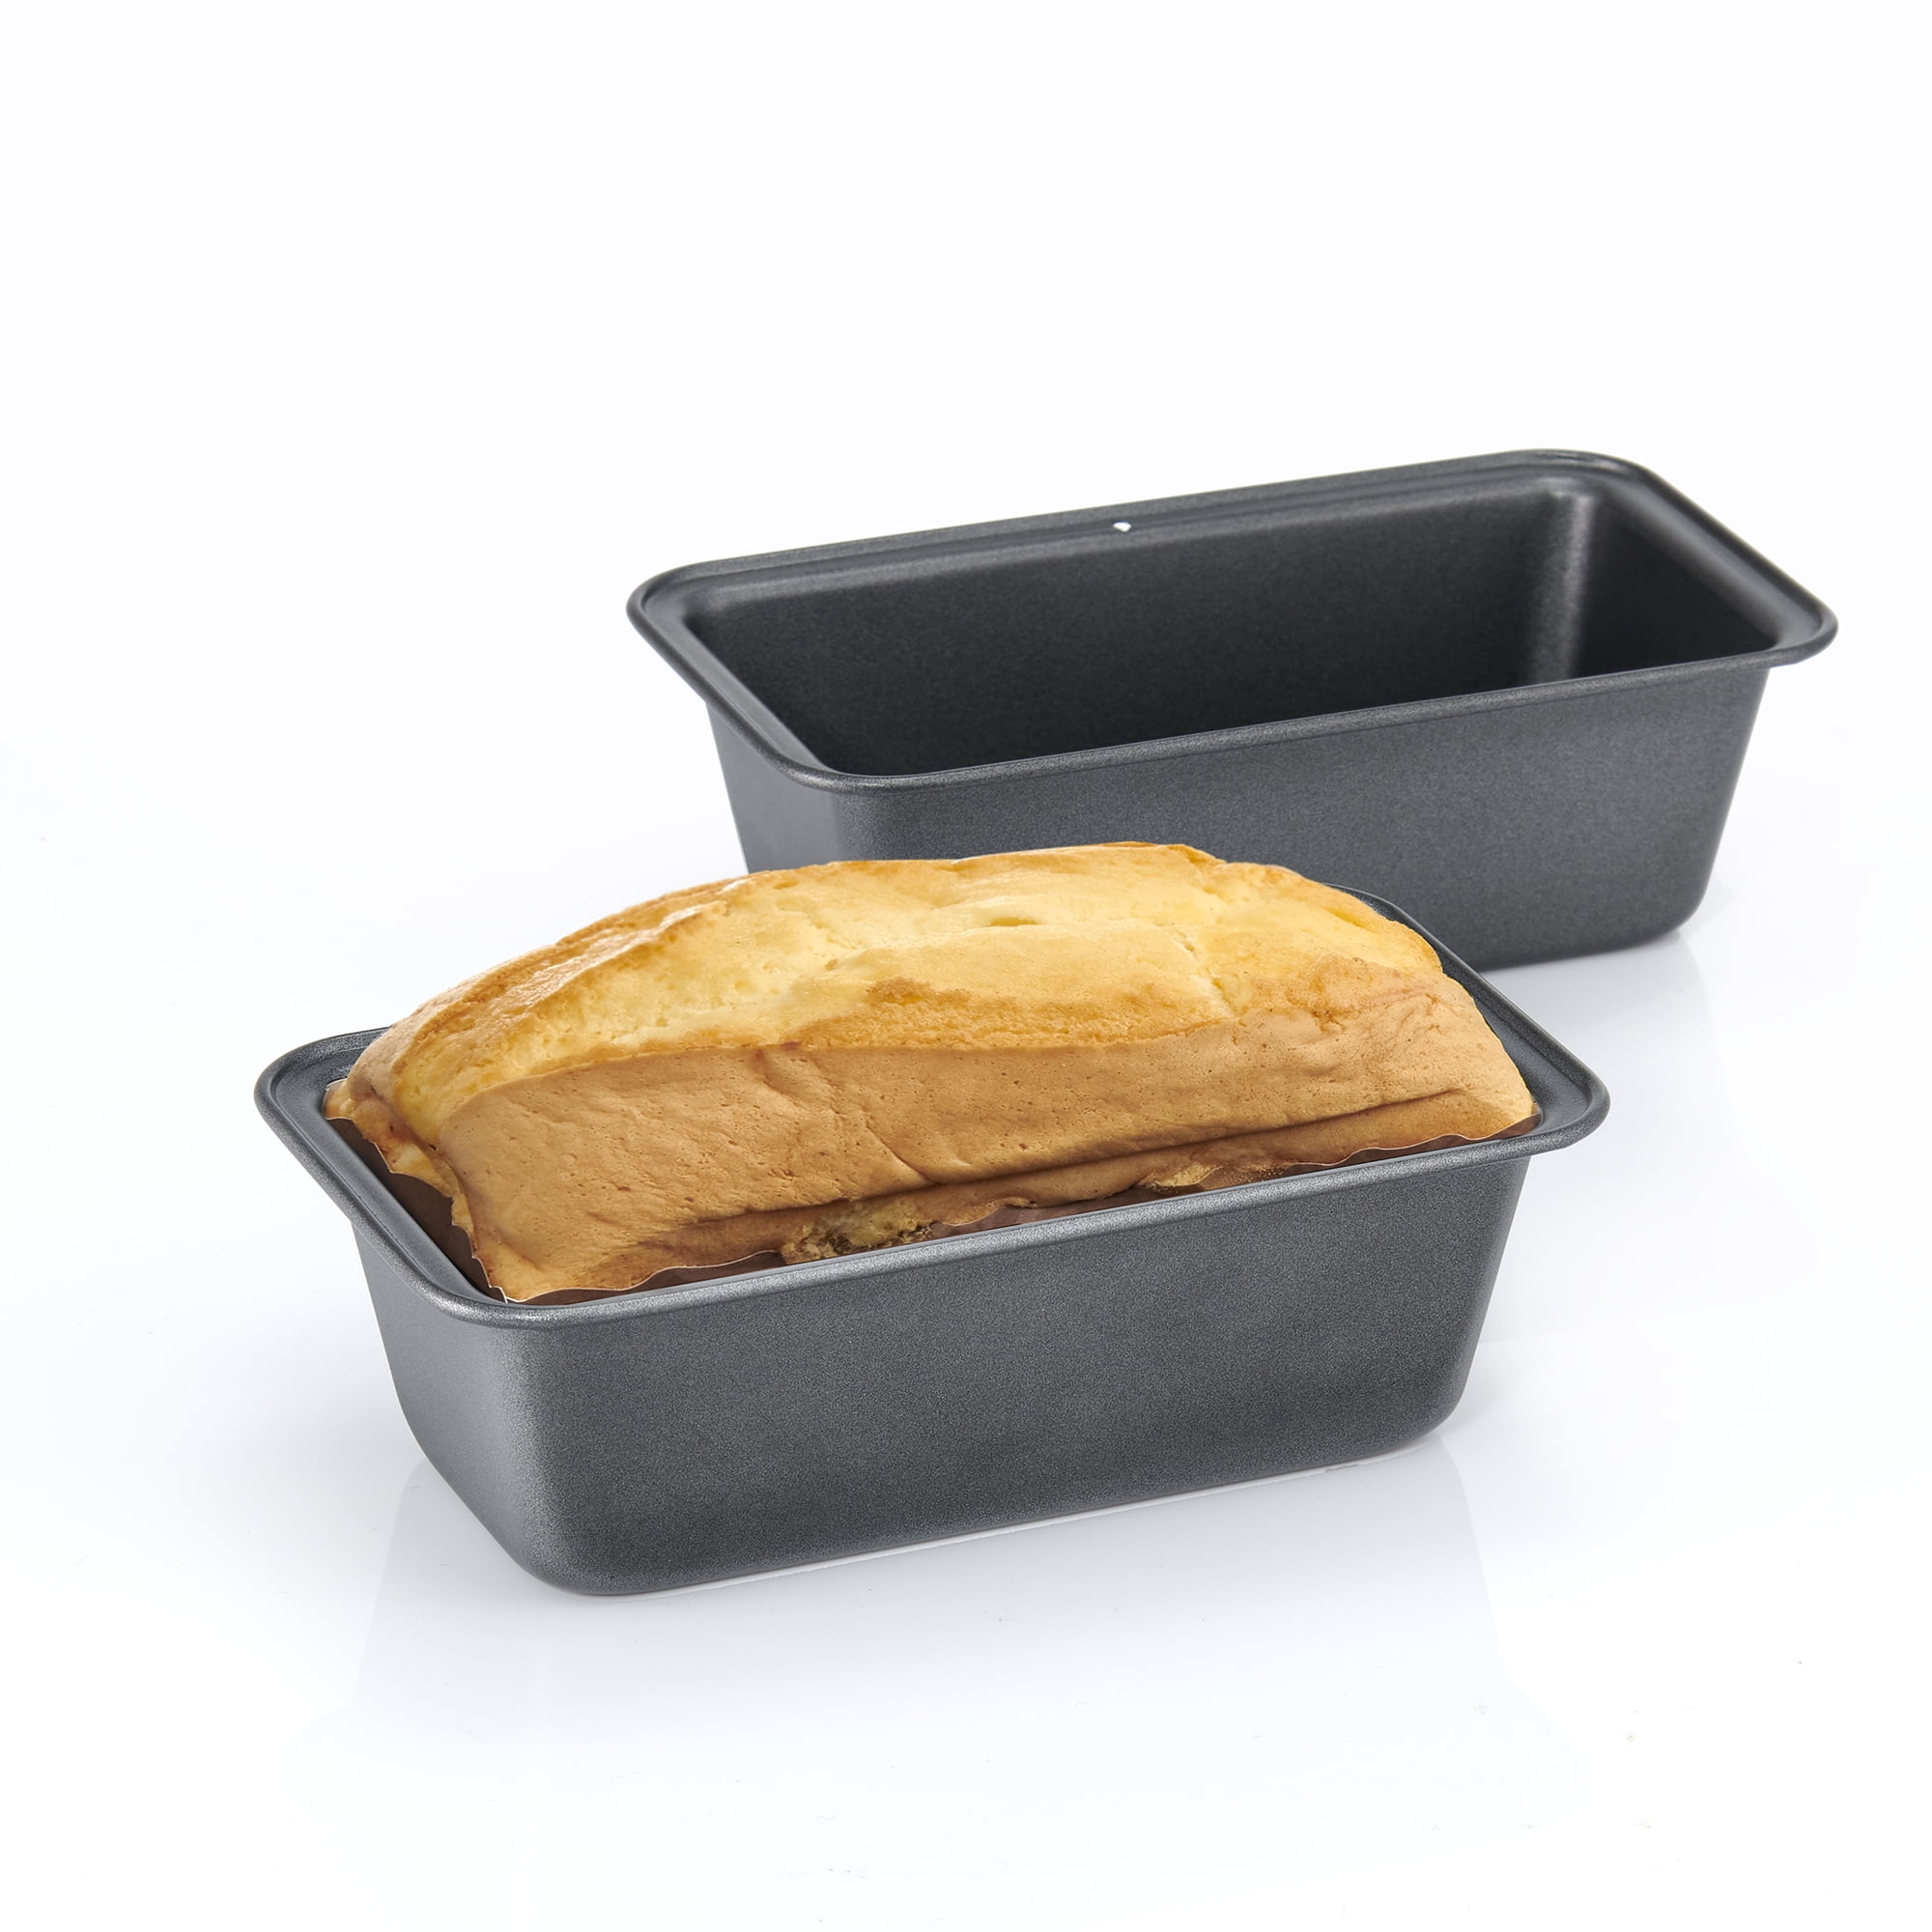 ionEgg ionegg silicone mini loaf pan, non-stick mini bread pan, 9